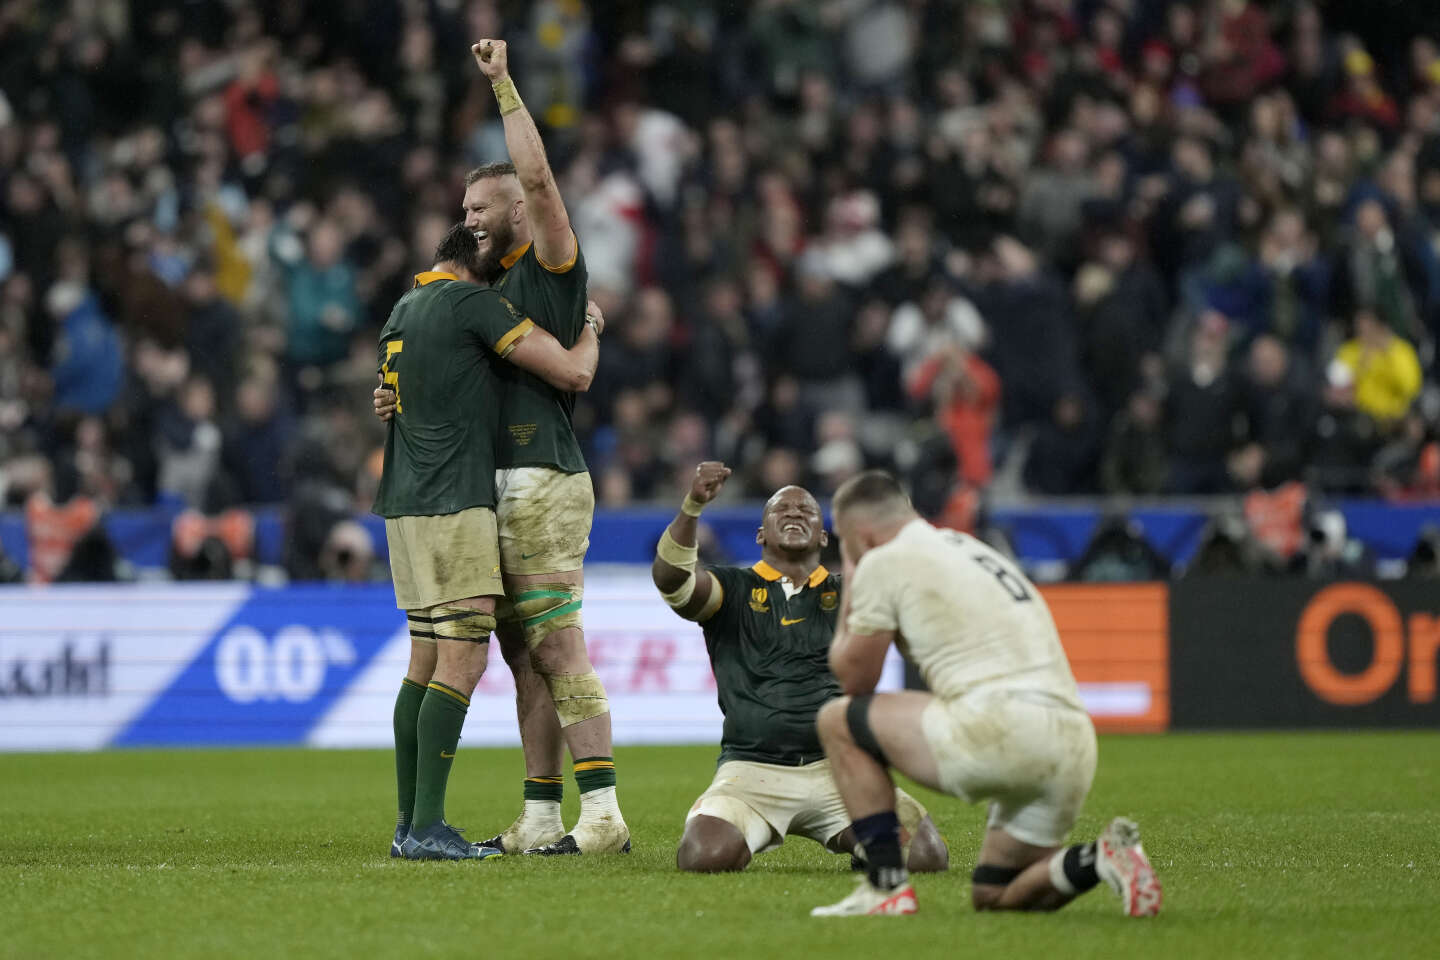 Gli Springboks, vincitori fino all’ultimo, difenderanno il titolo nella finale della Coppa del mondo di rugby